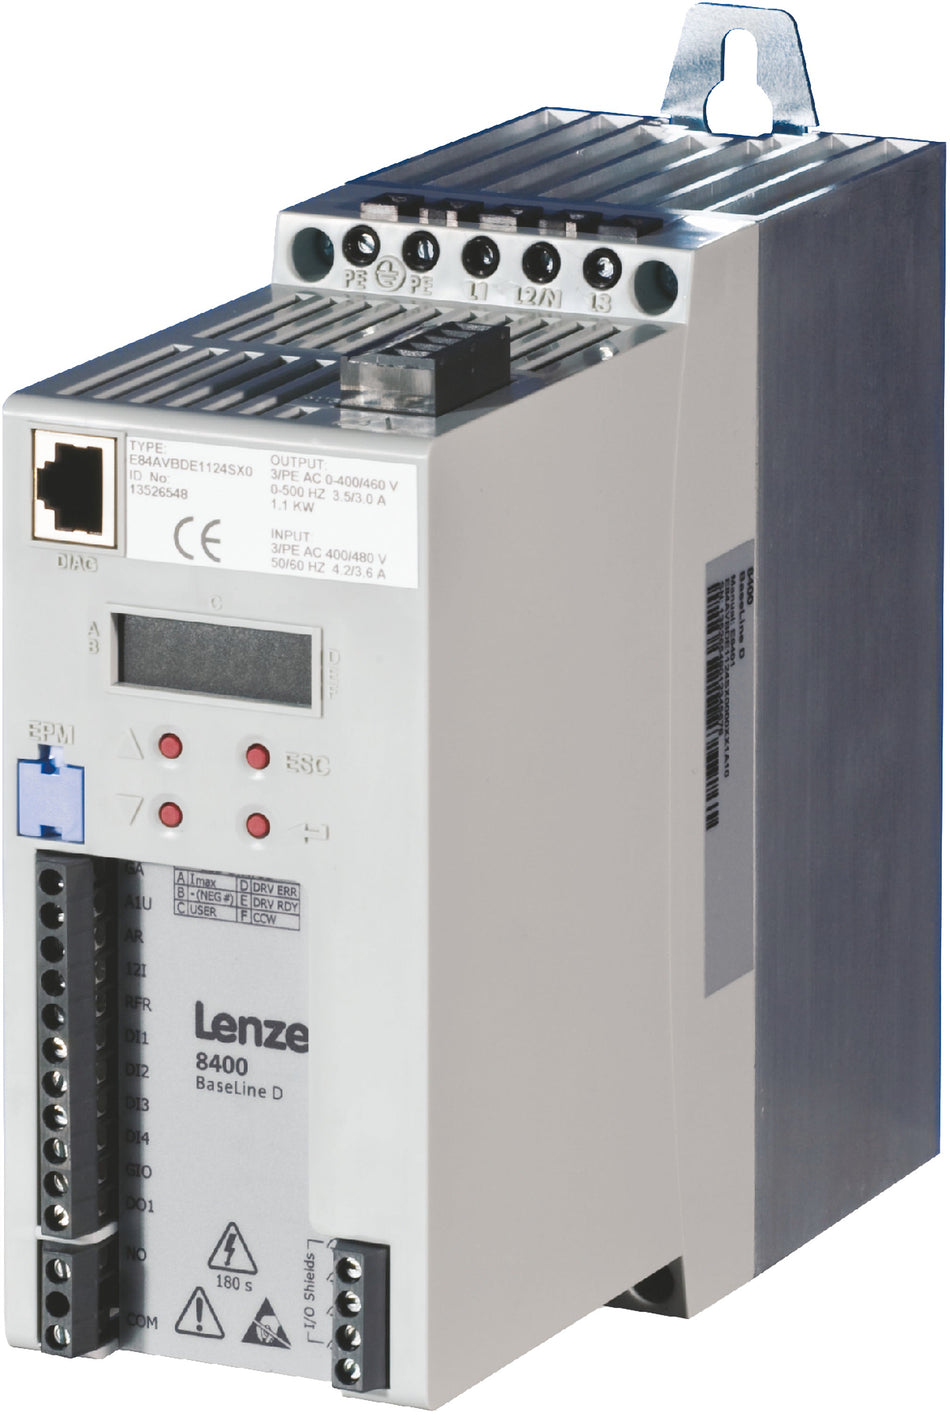 Lenze Inverter Drives 8400 BaseLine - E84AVBDE7514SX2 0.75 kW